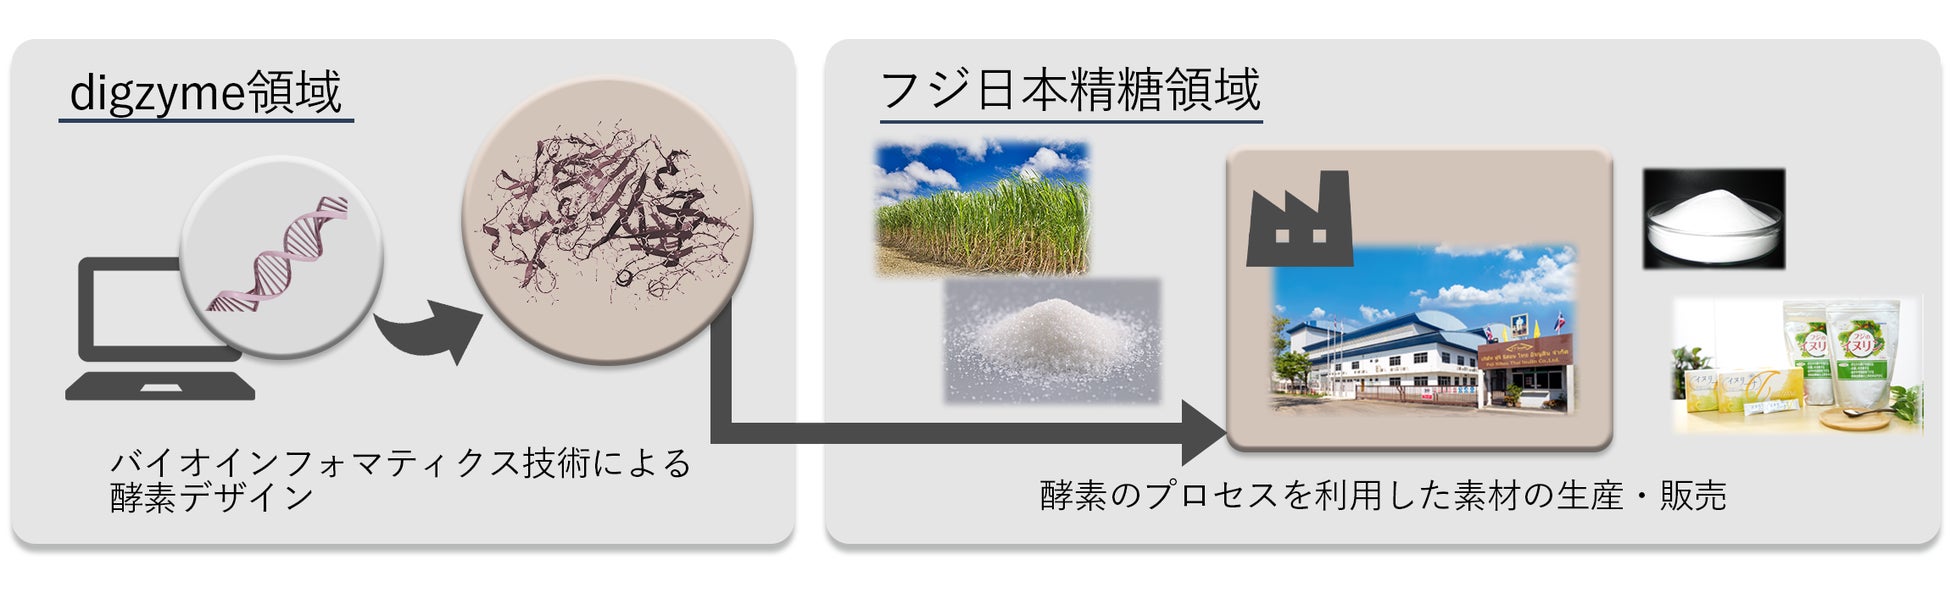 糖質原料から酵素法による新規機能性素材の開発と実用化に向けて、digzyme、フジ日本精糖と業務提携契約を締結